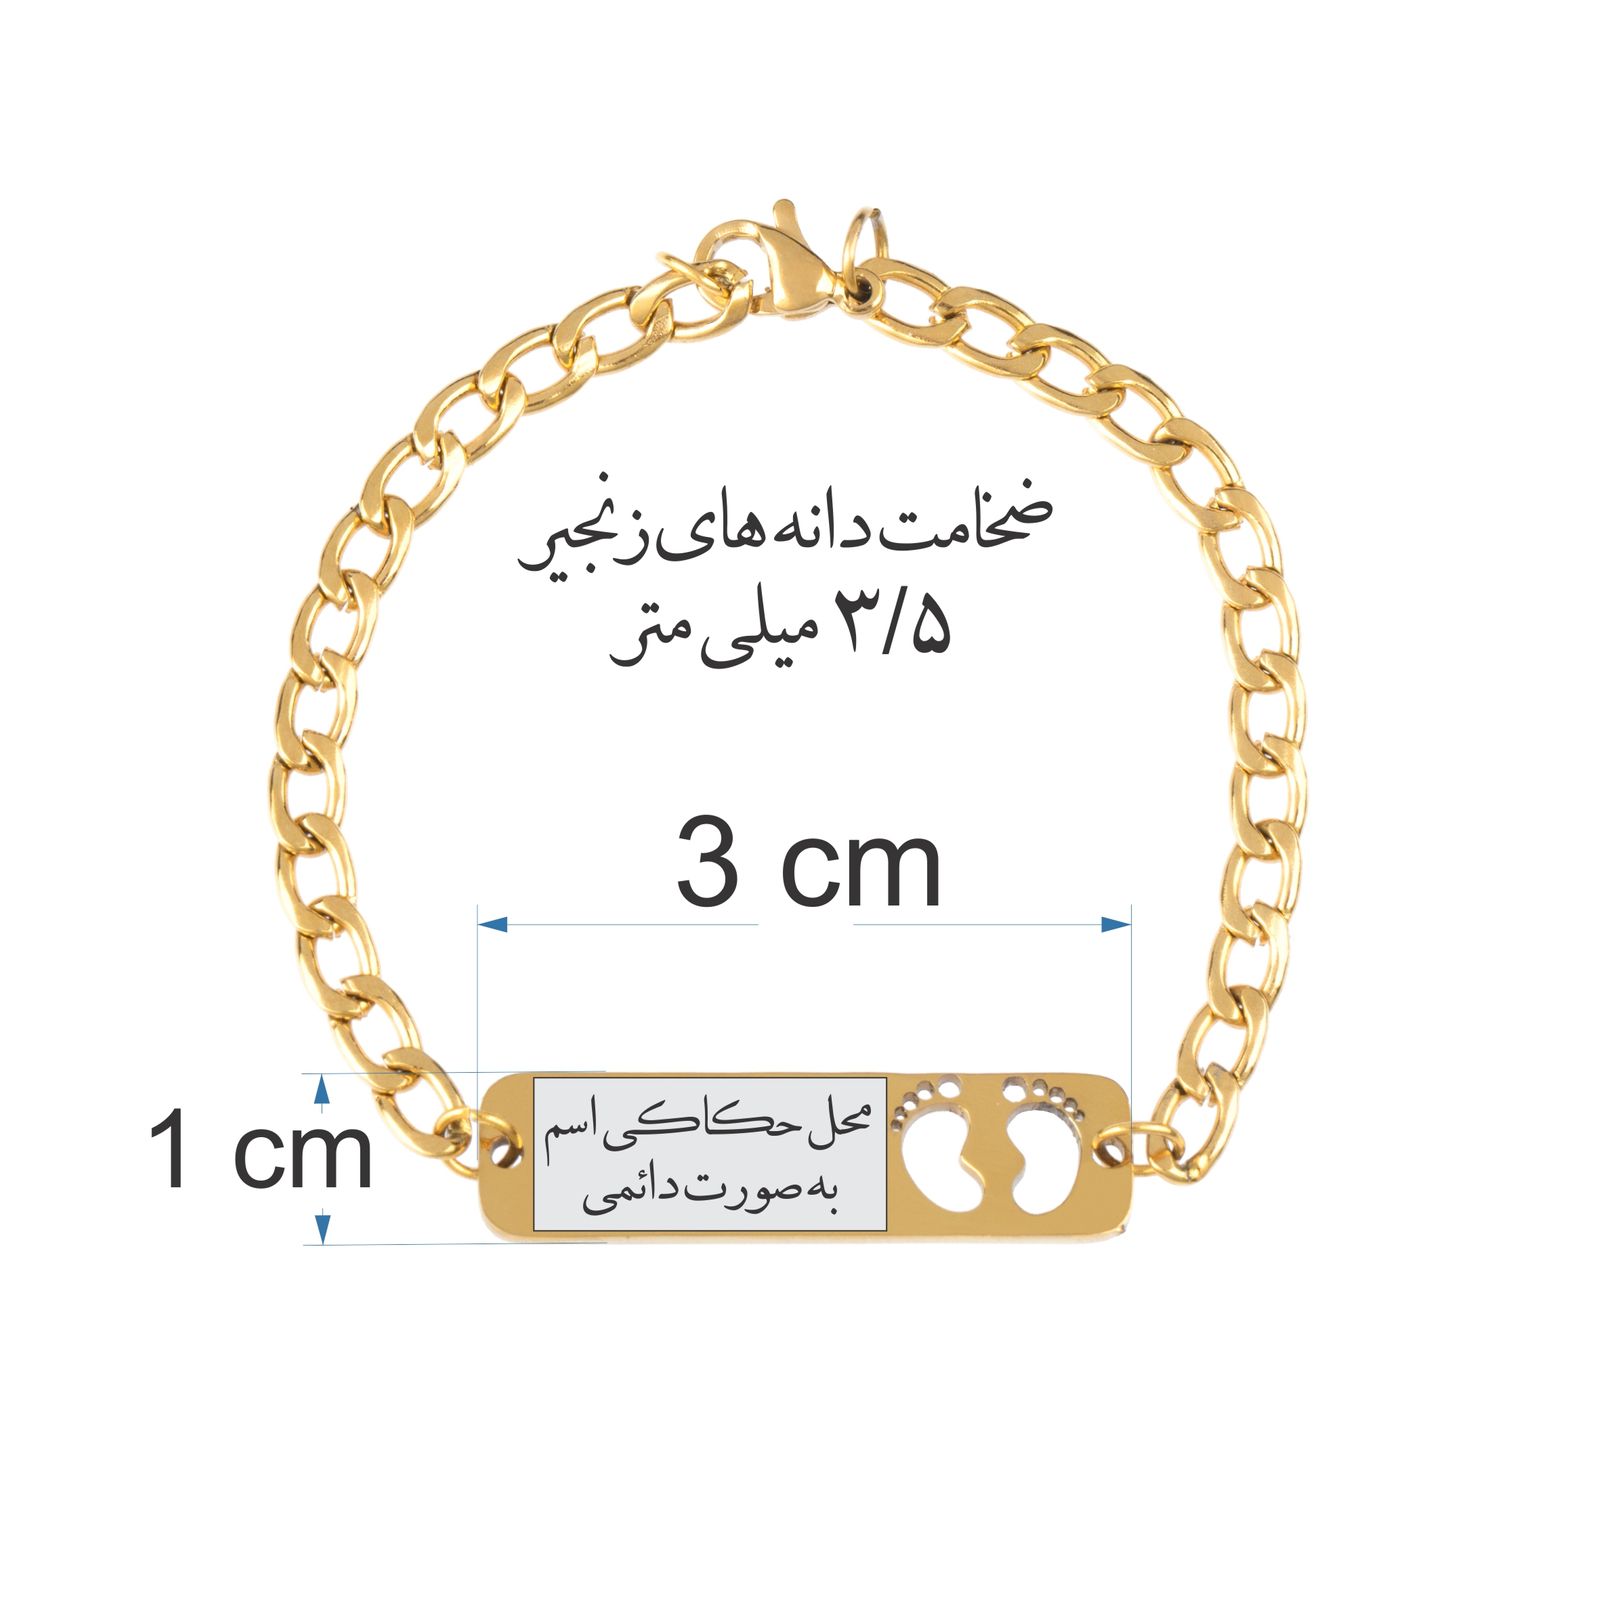 دستبند دخترانه گيلواره زراوشان مدل اسم کژال کد B372 -  - 3